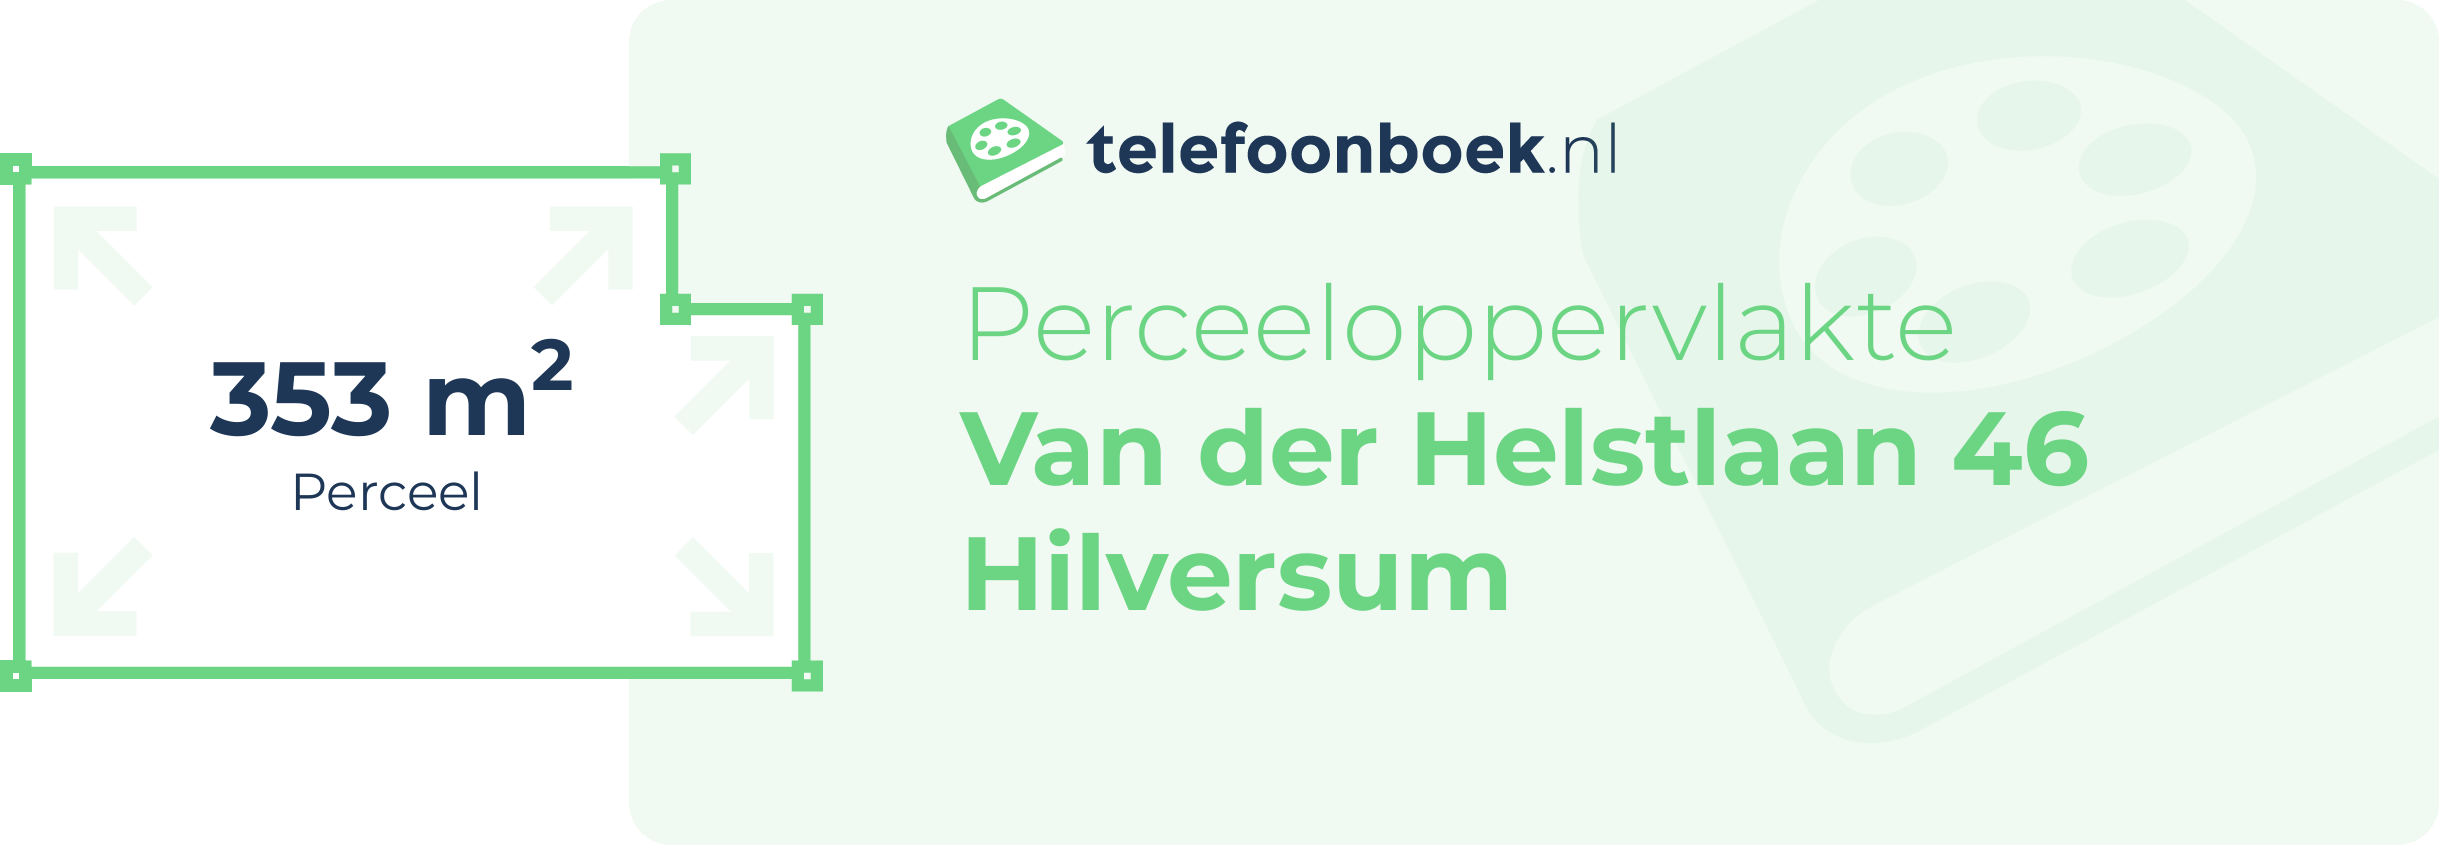 Perceeloppervlakte Van Der Helstlaan 46 Hilversum